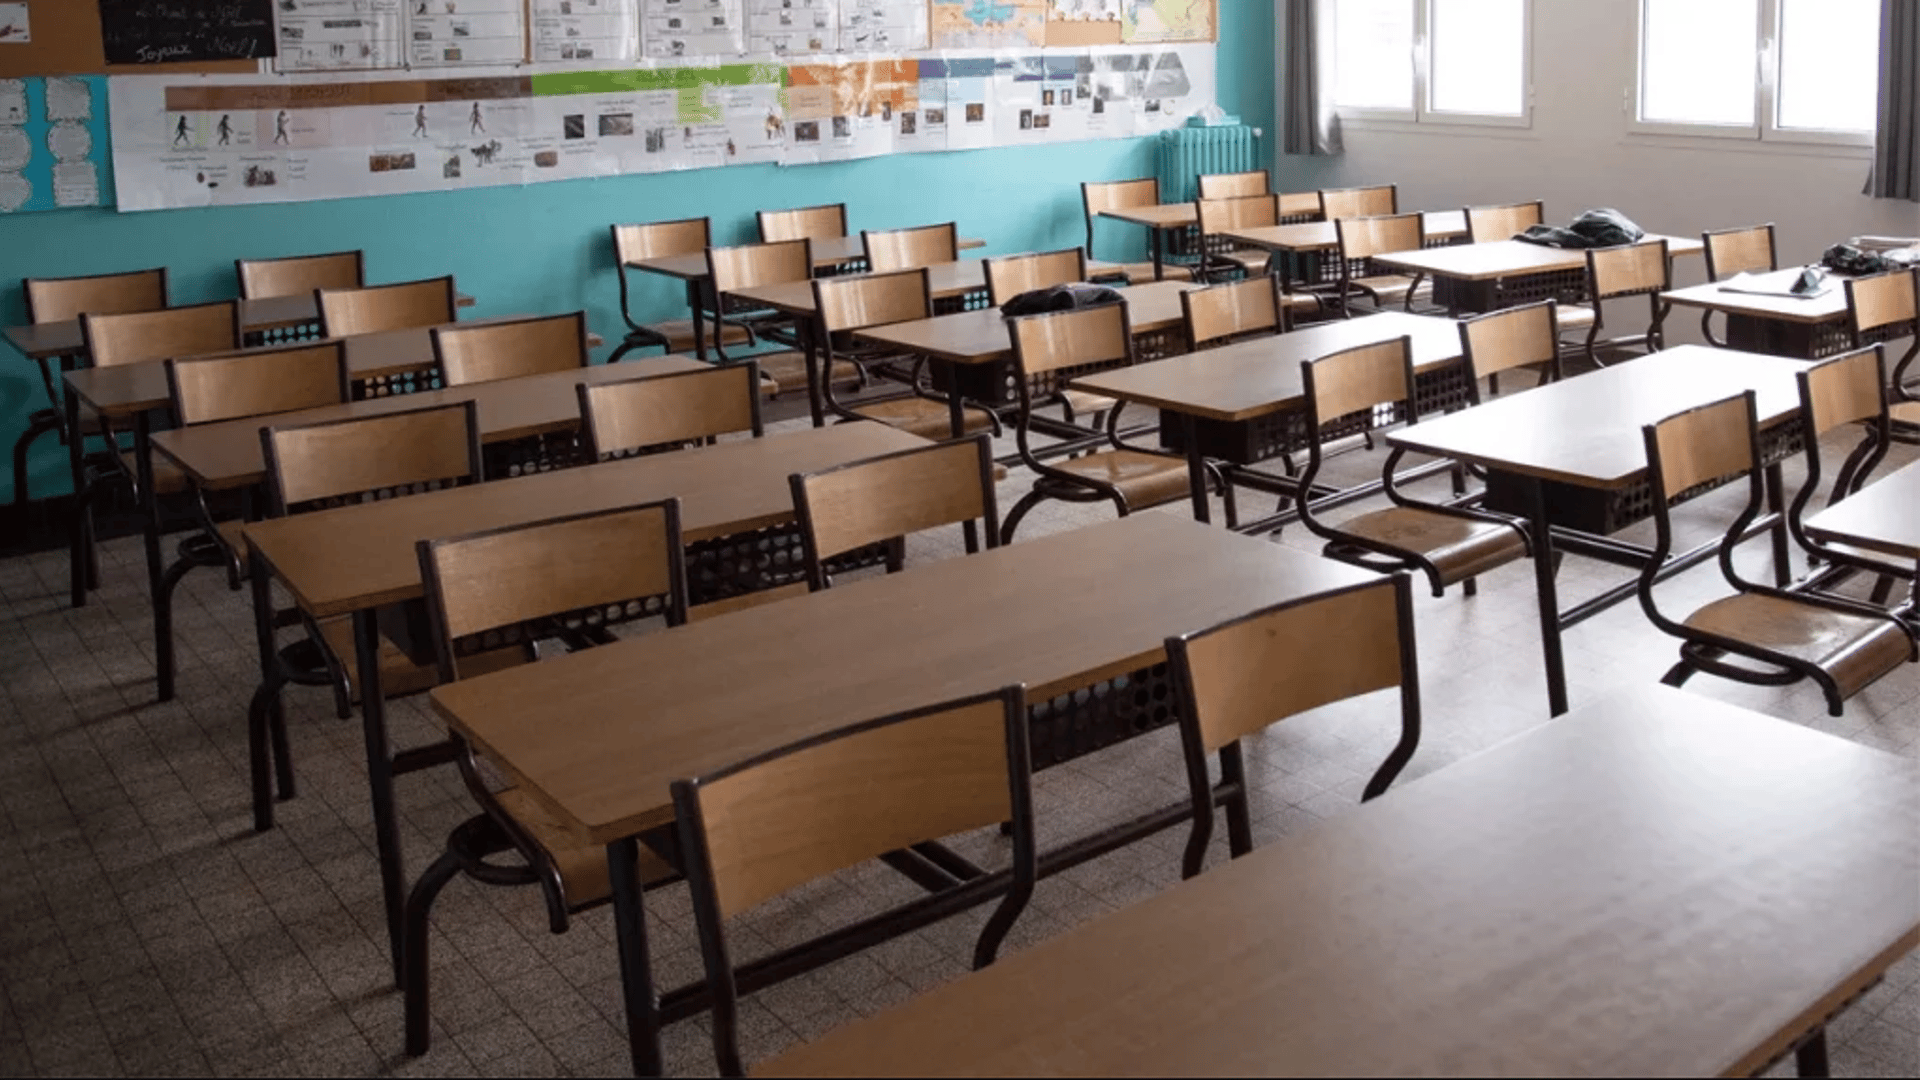 السليمانية: وفاة طالب بعمر 12 عاماً داخل الصف الدراسي